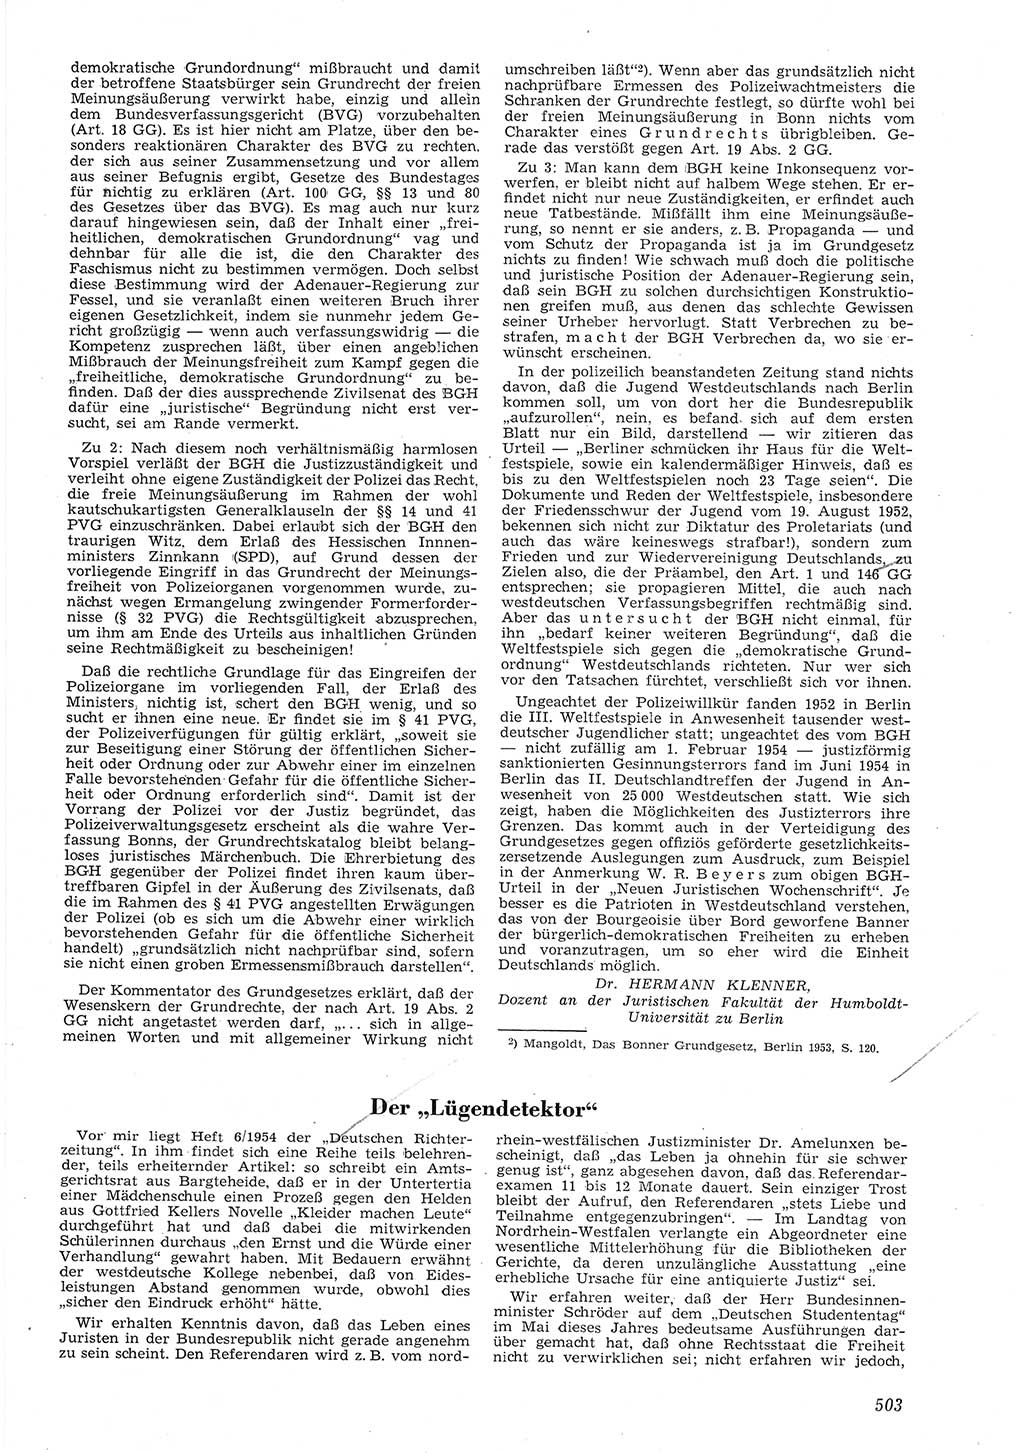 Neue Justiz (NJ), Zeitschrift für Recht und Rechtswissenschaft [Deutsche Demokratische Republik (DDR)], 8. Jahrgang 1954, Seite 503 (NJ DDR 1954, S. 503)